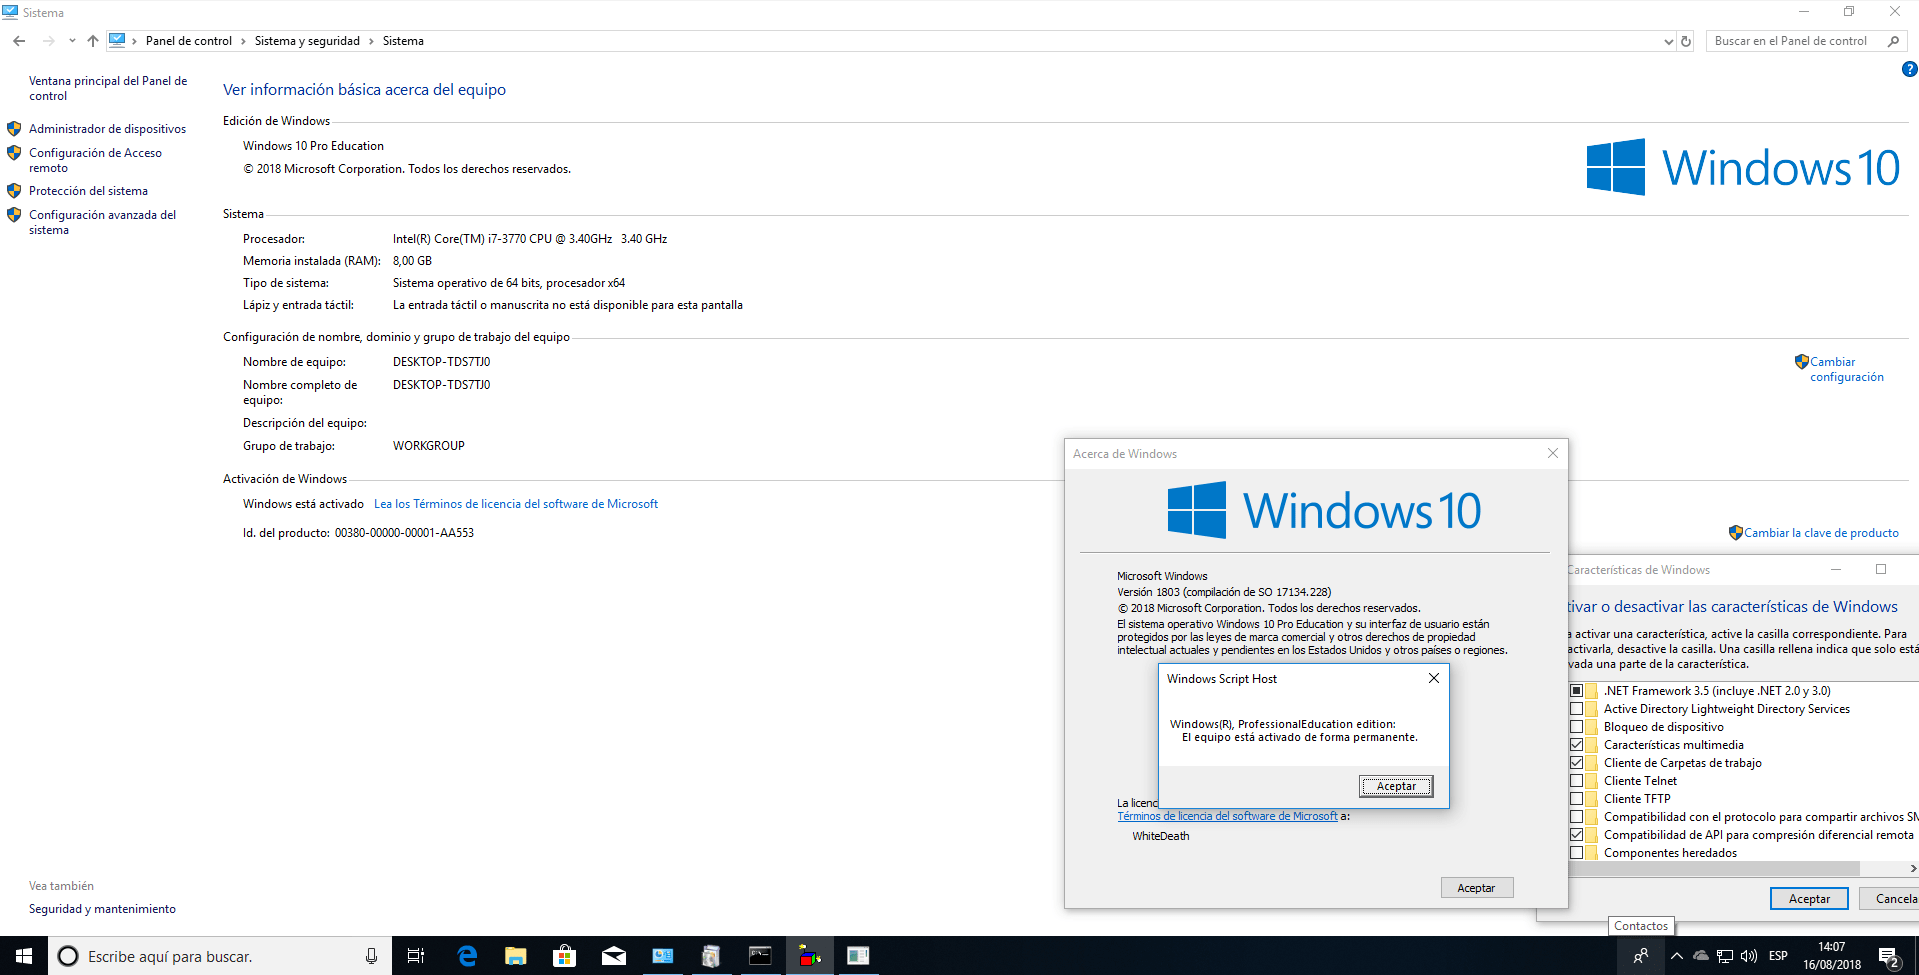 windows 10 1803 iso download 64 bit